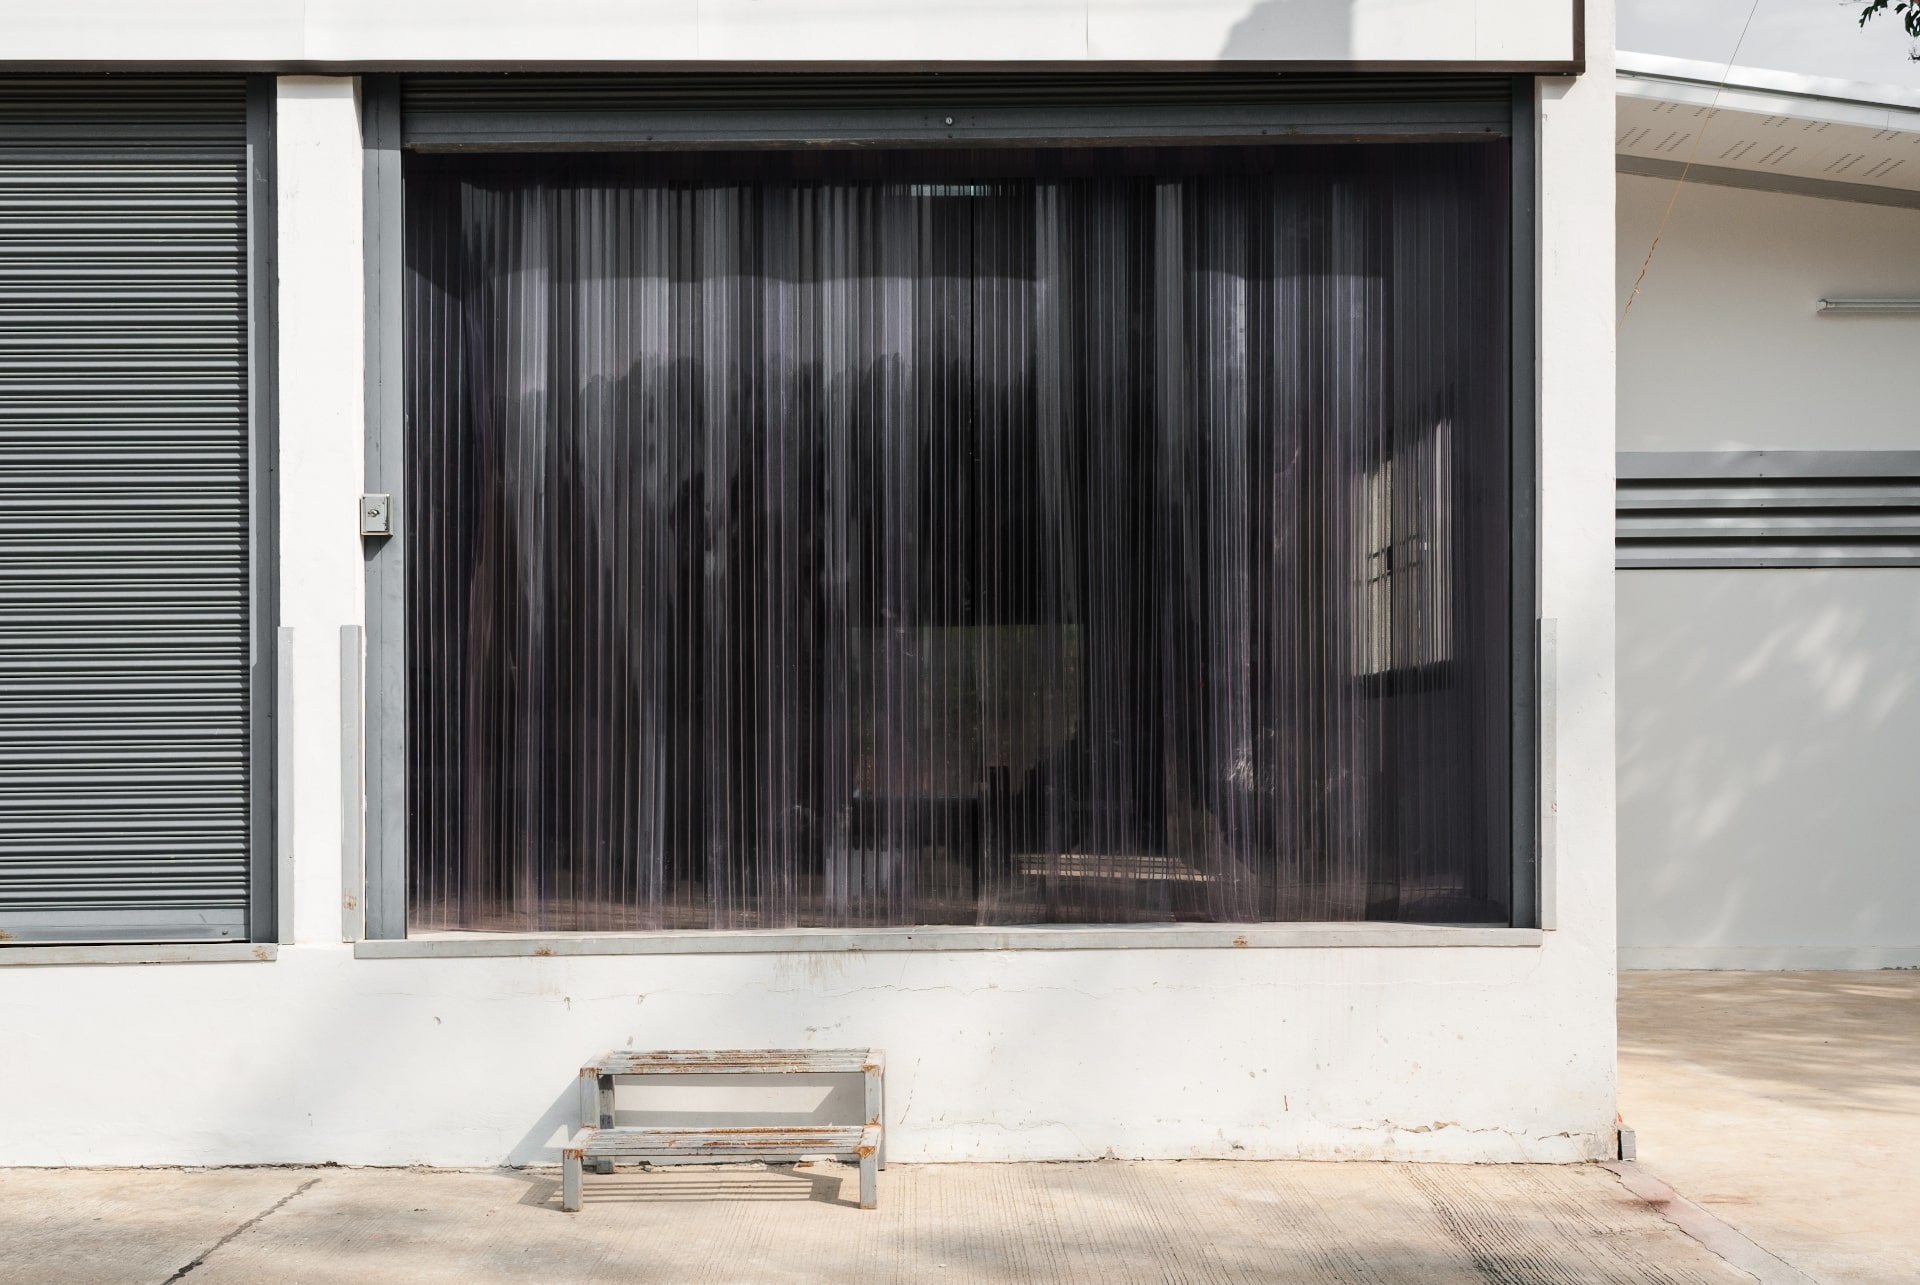 Industrial PVC Strip Curtains